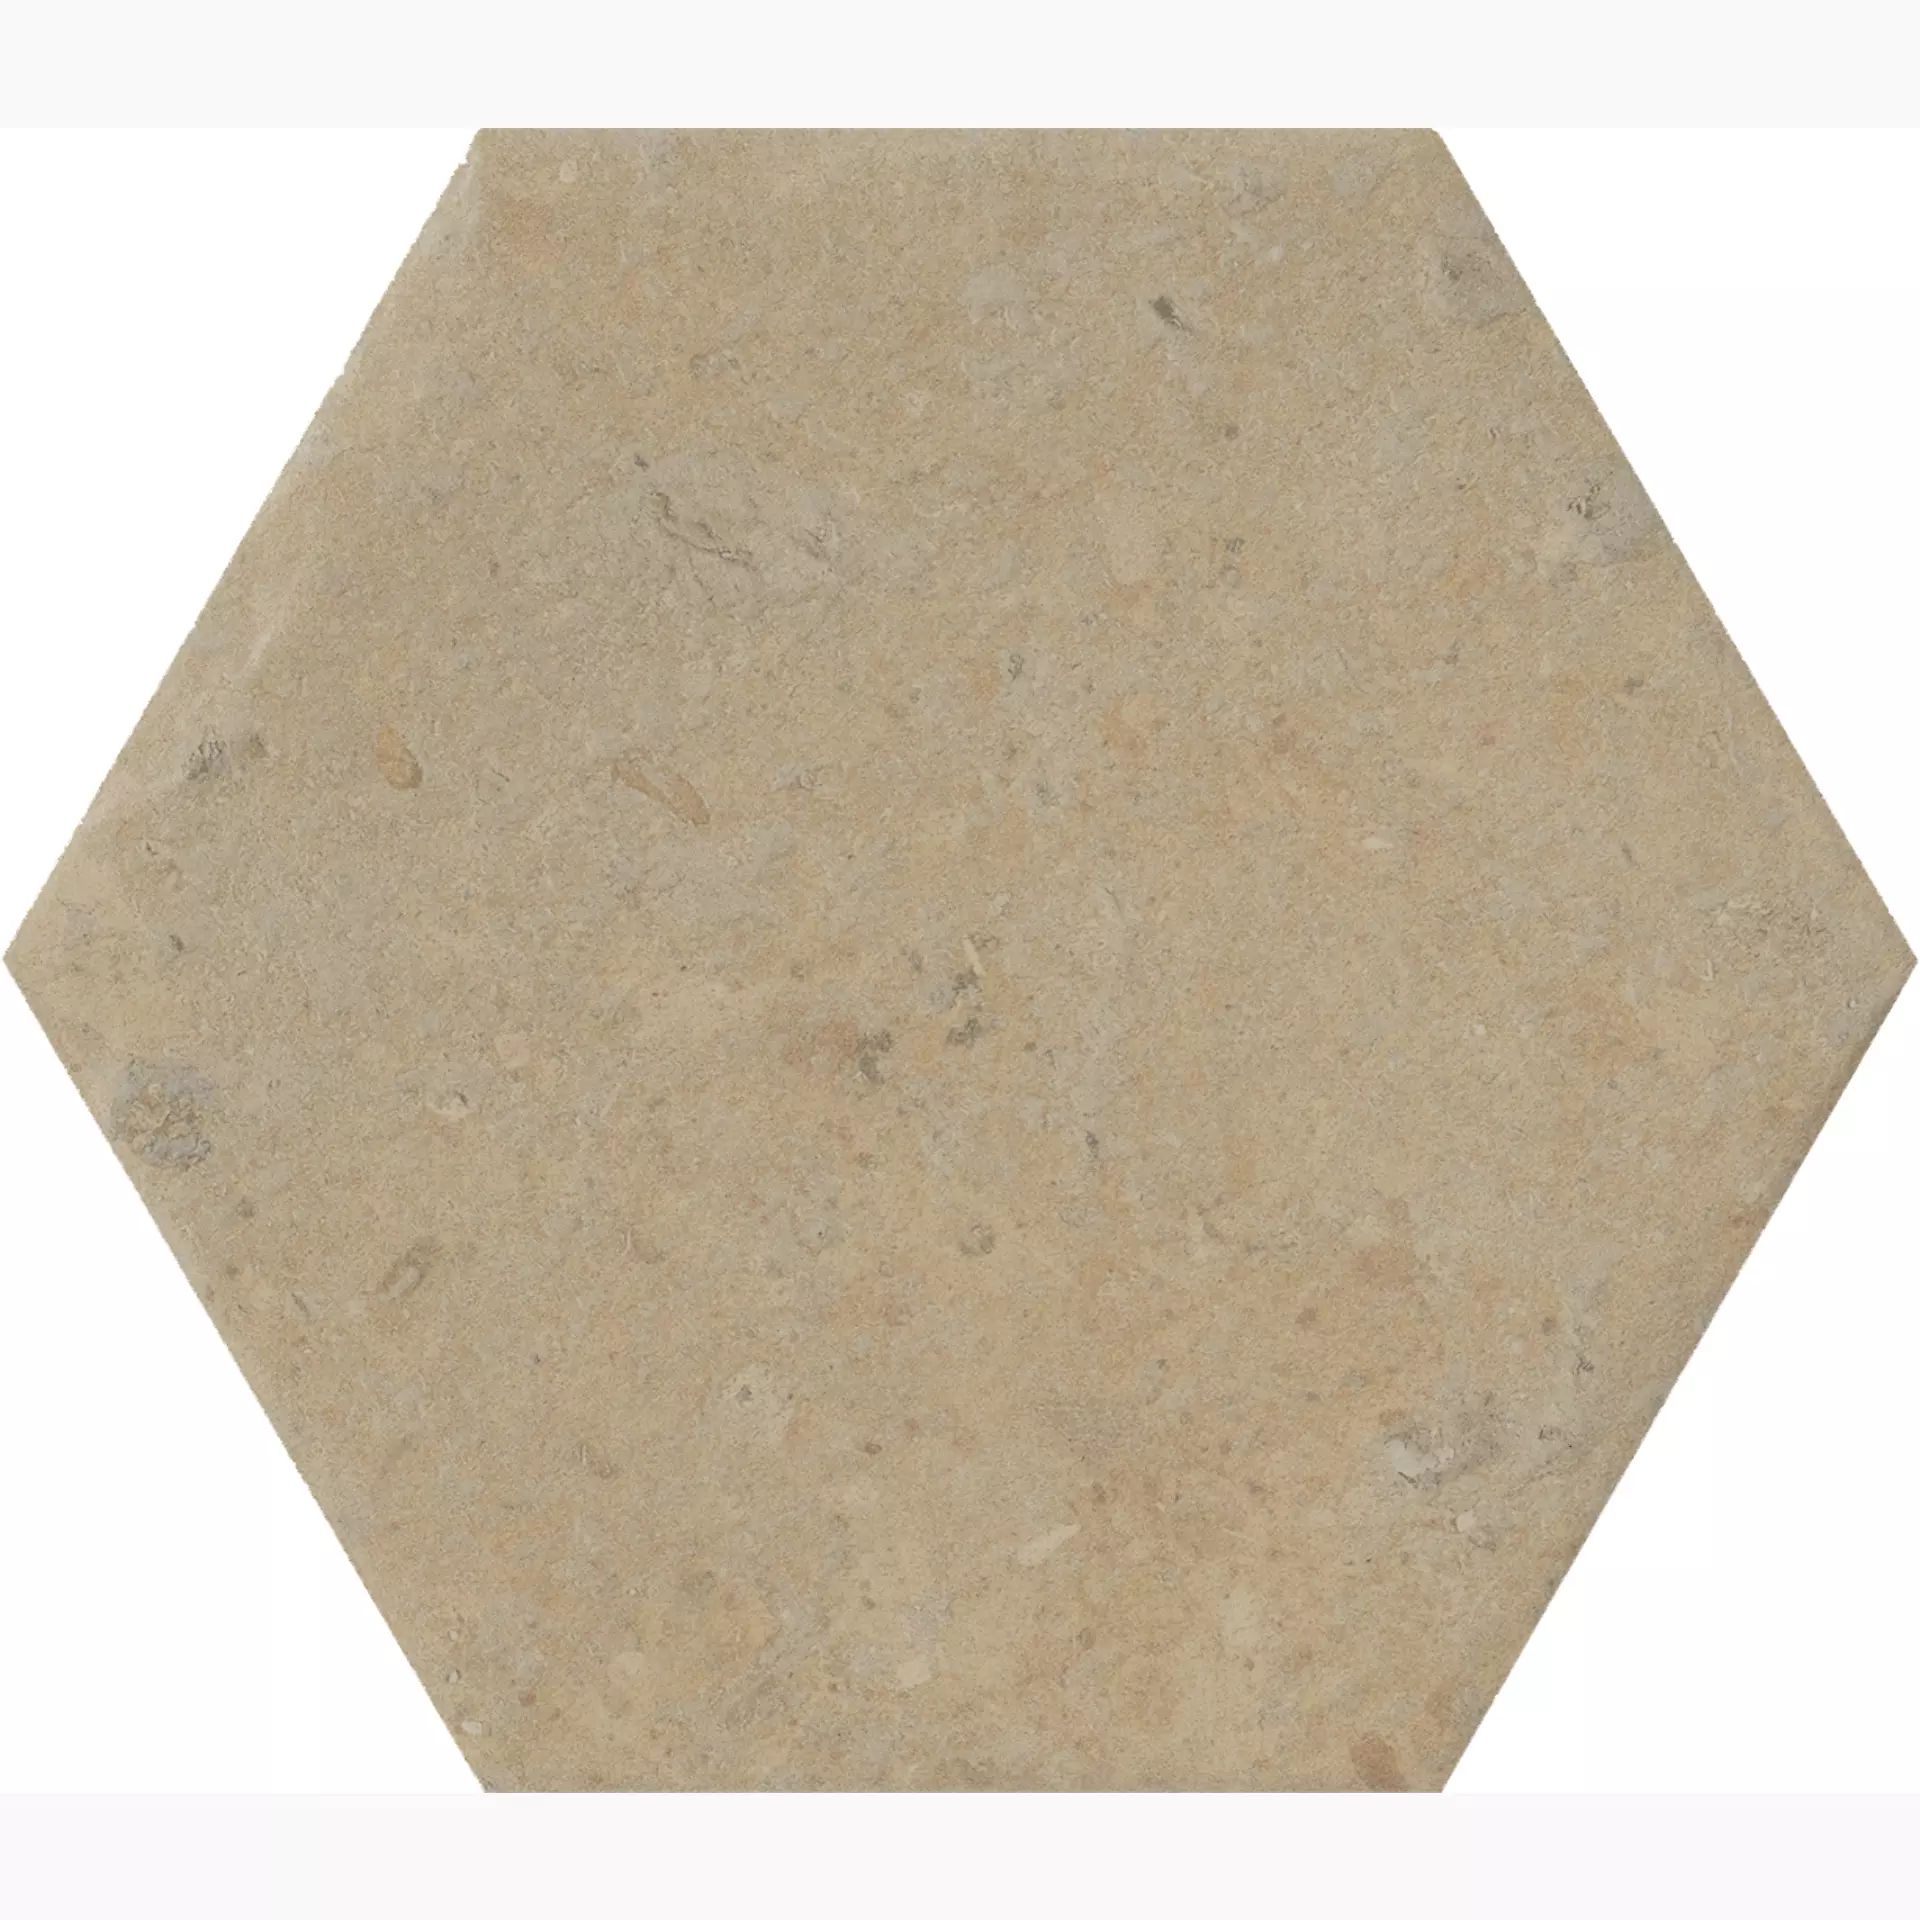 CIR Cotto Del Campiano Terra Di Pienza Naturale Hexagon 1081244 15,8x18,3cm 10mm